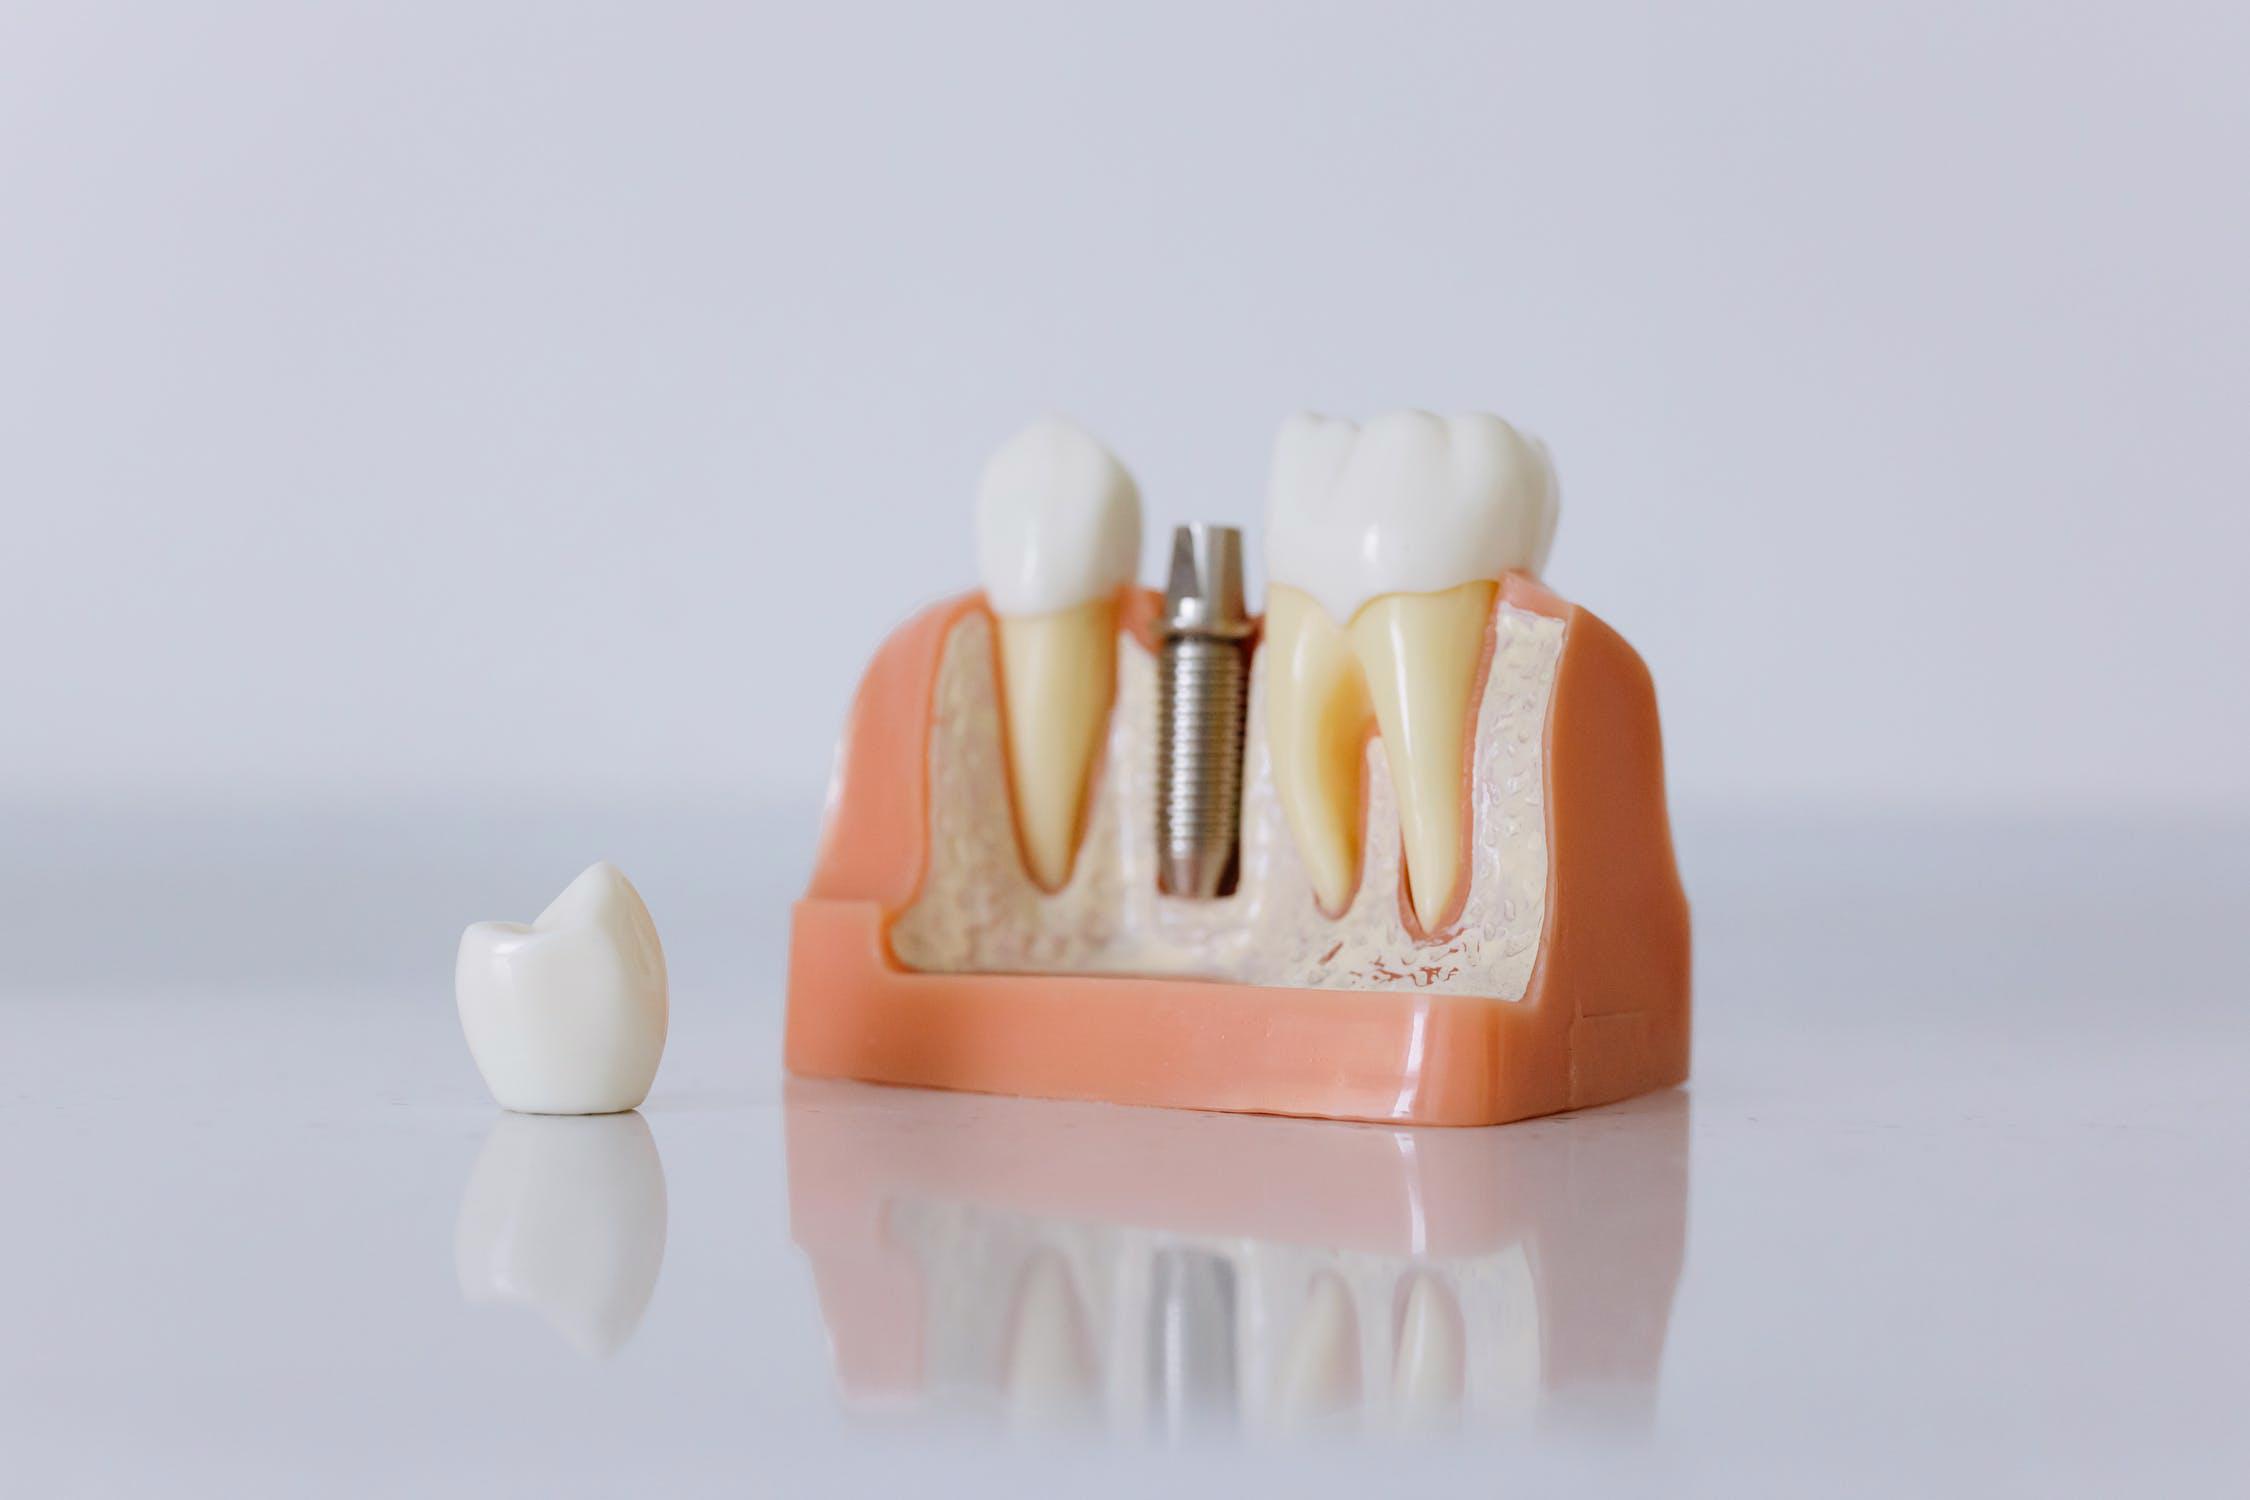 Cauzele unui implant dentar nereusit